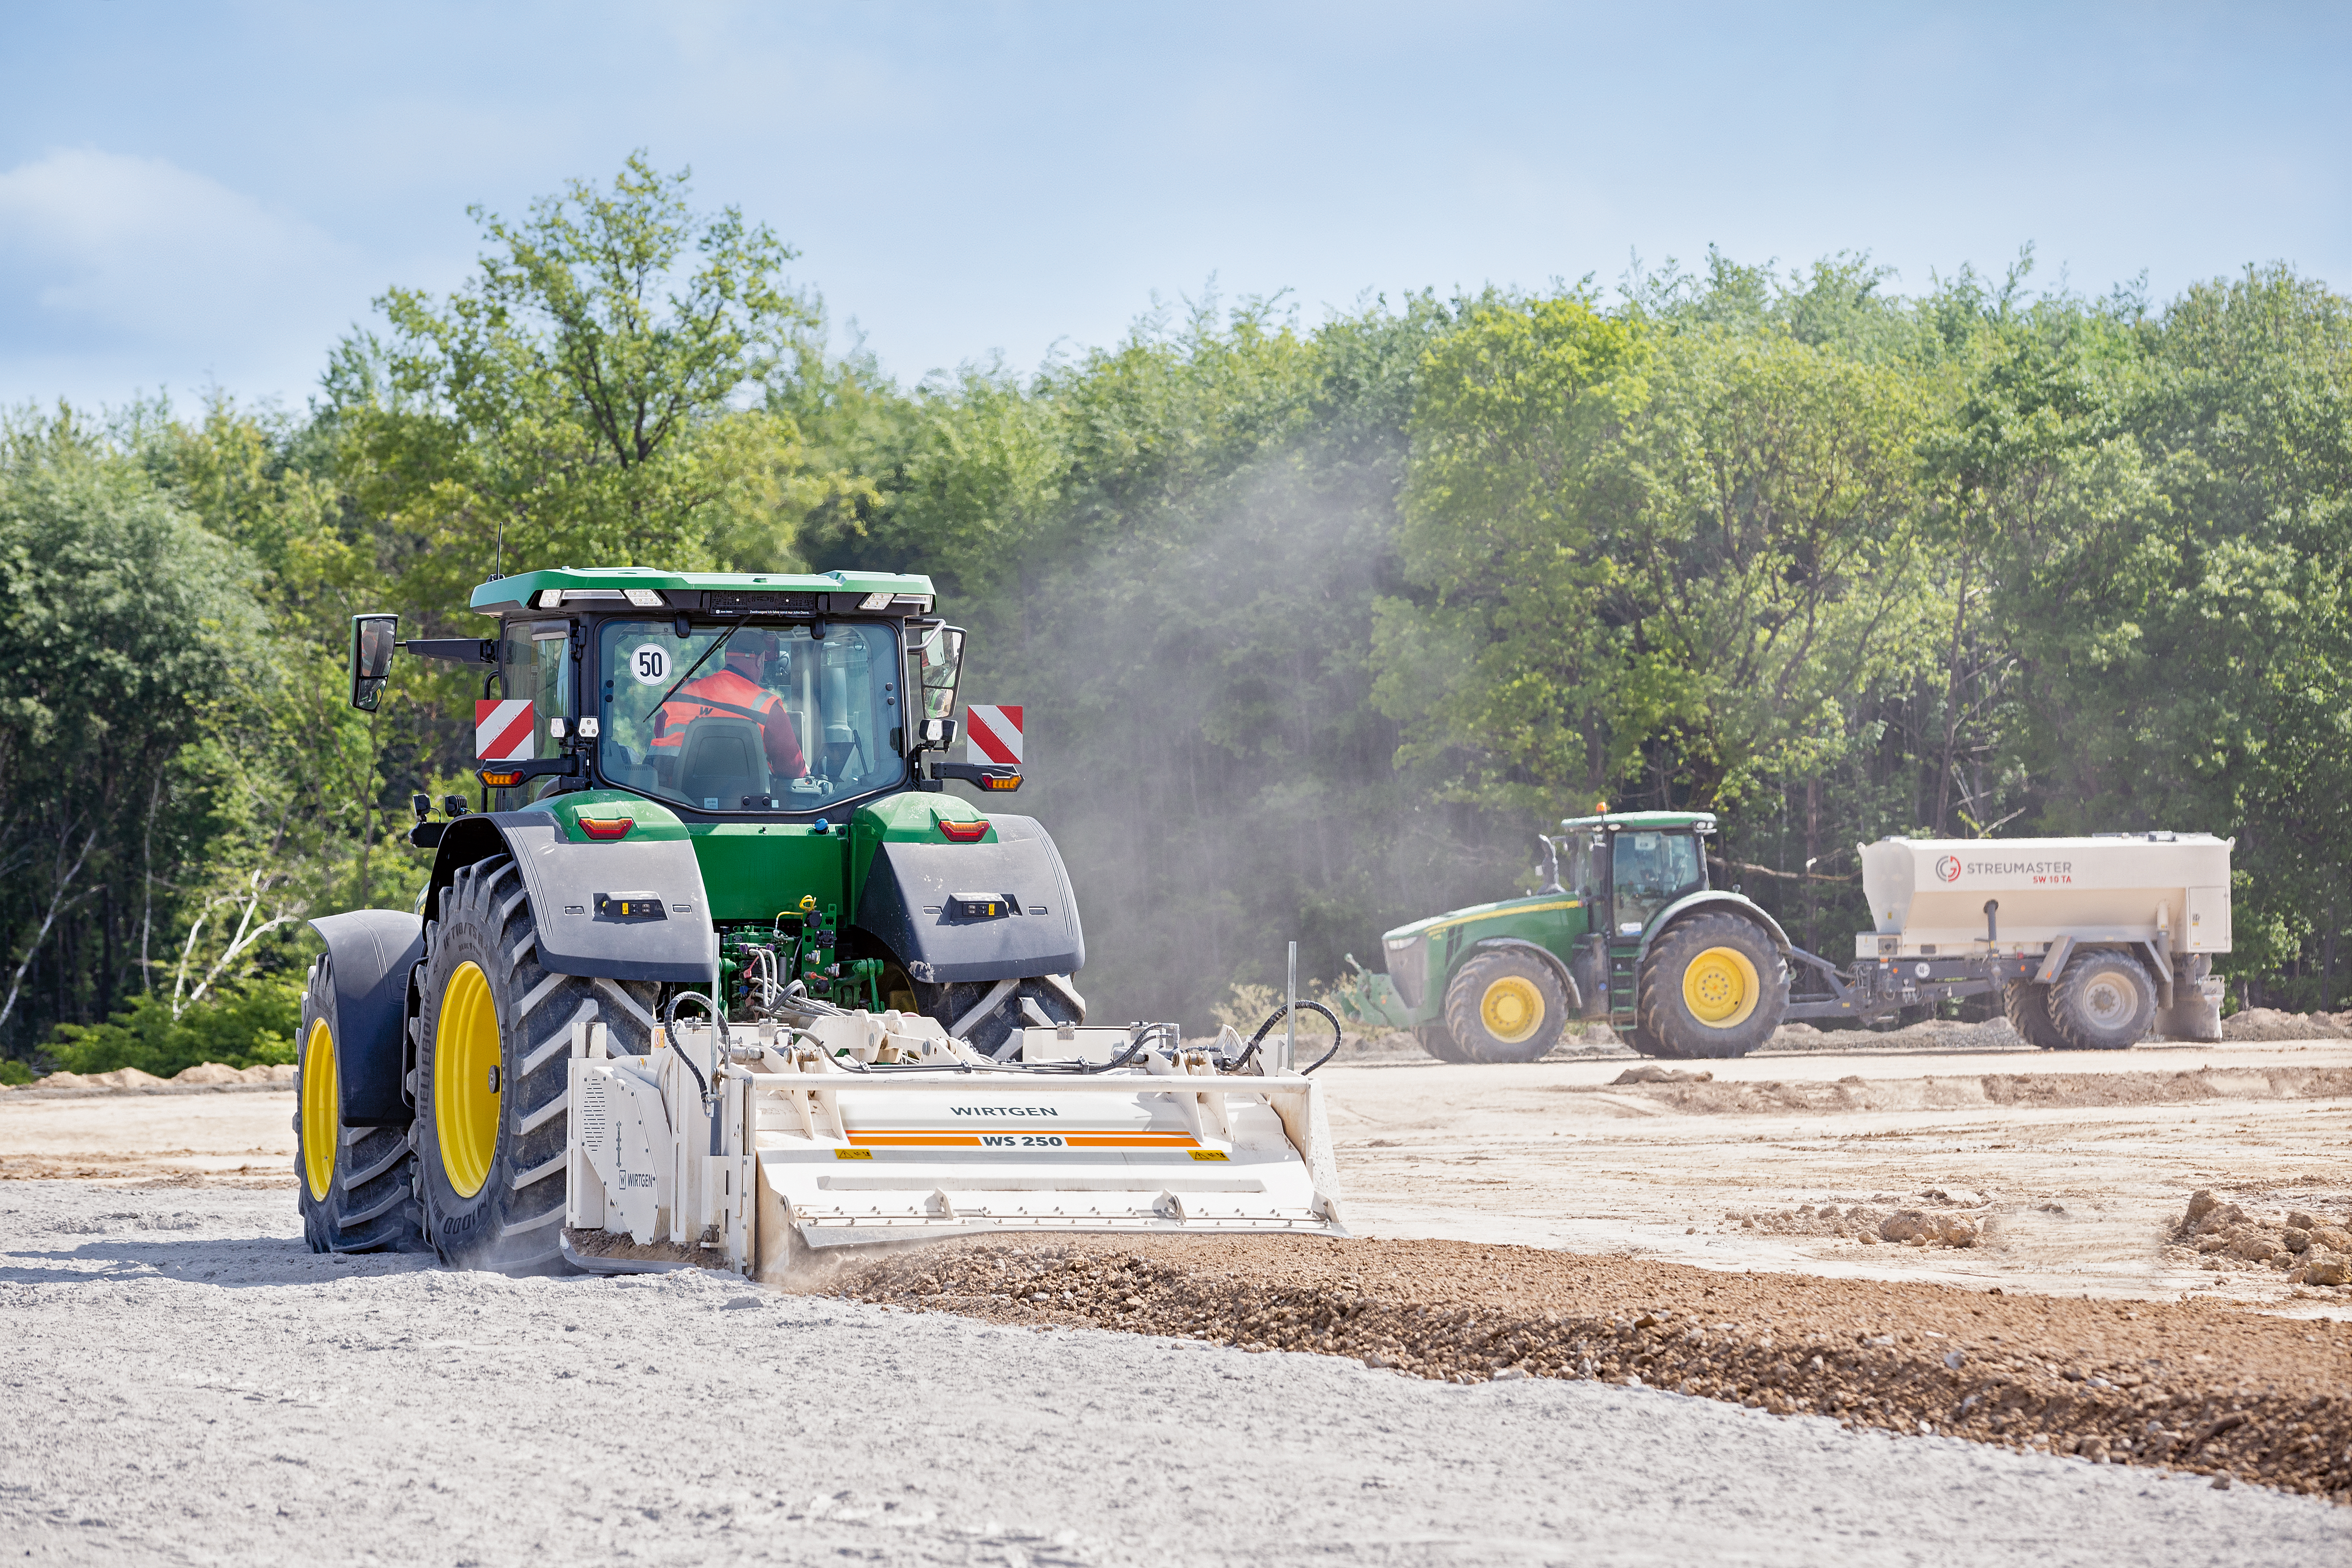 Mit Wirtgen Anbaustabilisierern wie dem WS 250 lässt sich ein Traktor schnell zum Bodenstabilisierer umrüsten und damit auch außerhalb der Erntesaison gewinnbringend nutzen. 